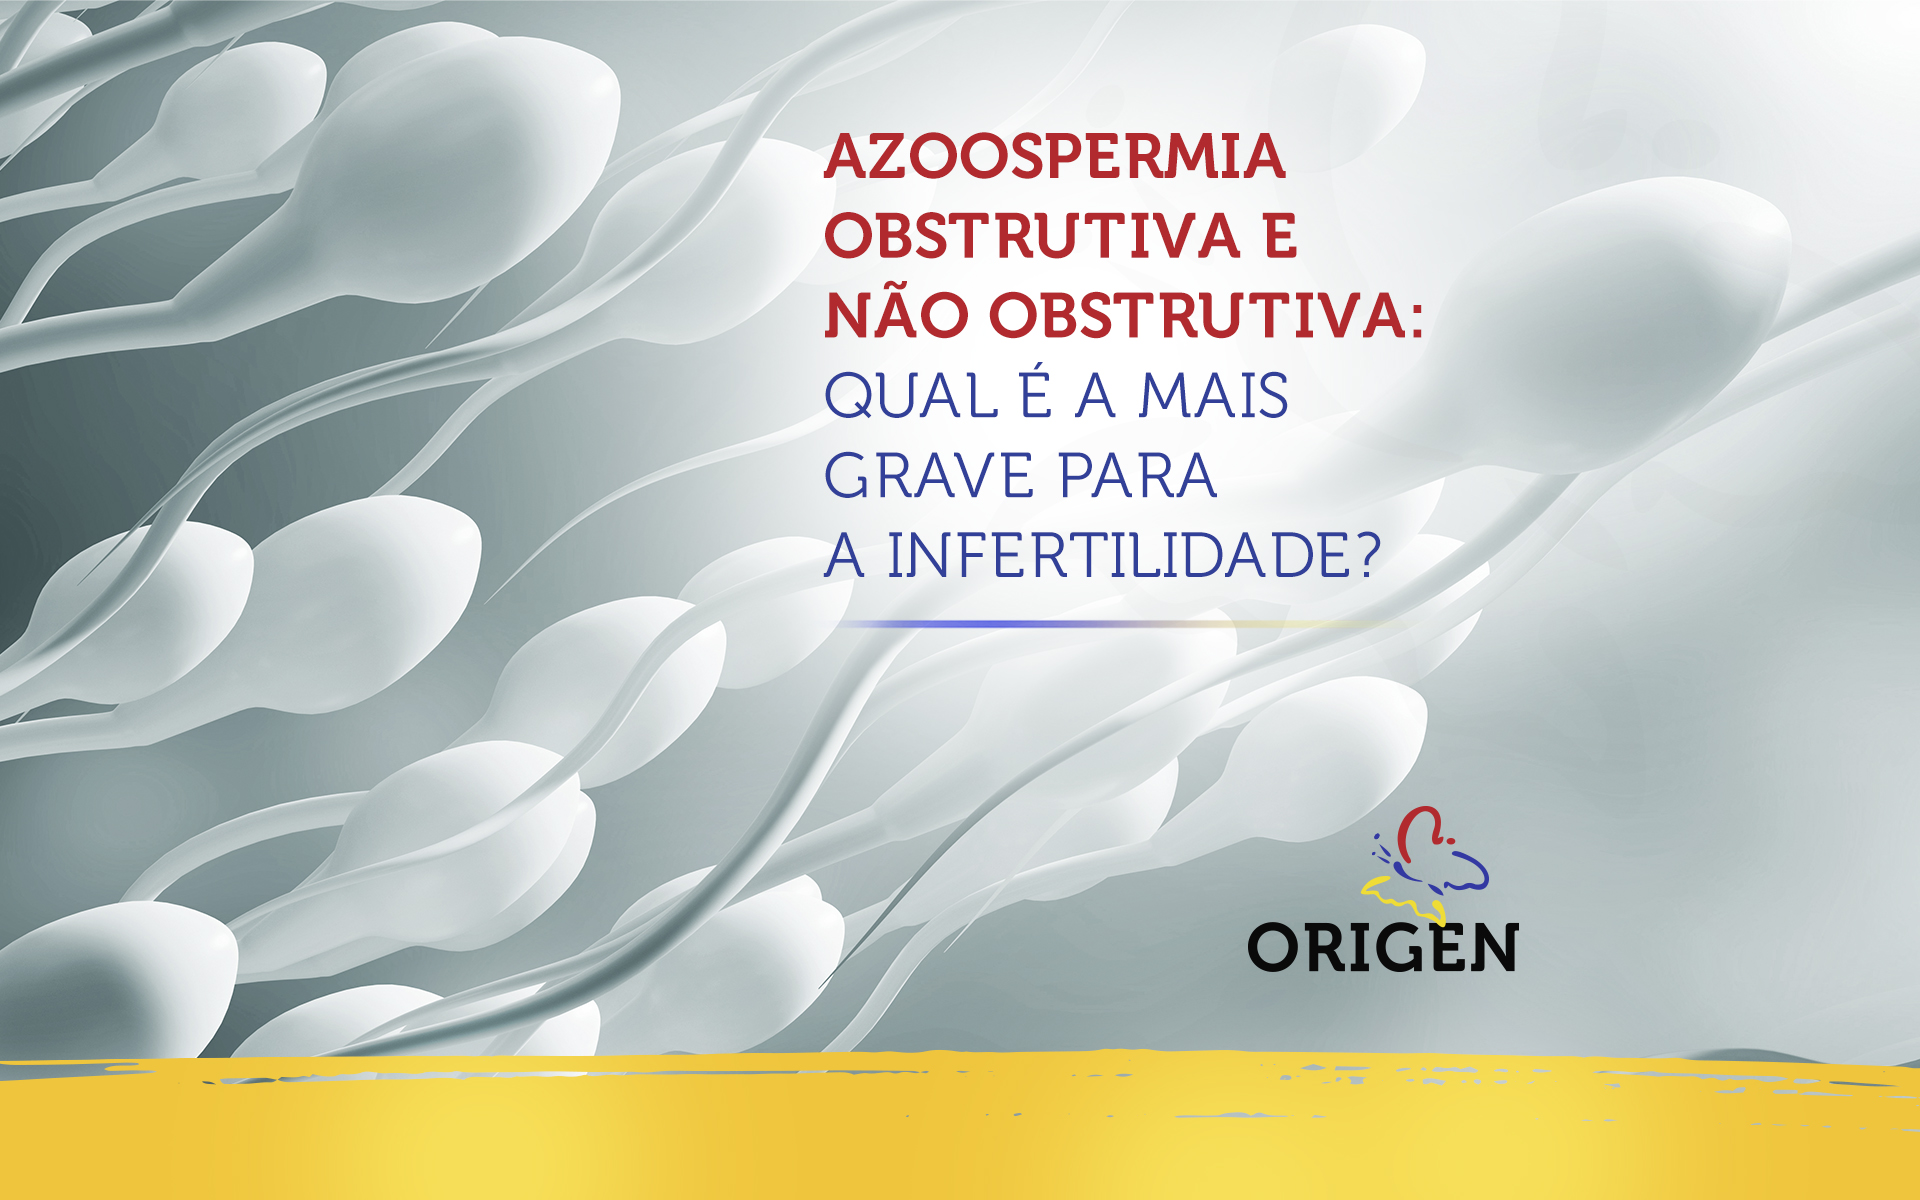 Azoospermia obstrutiva e não obstrutiva: qual é a mais grave para a infertilidade?